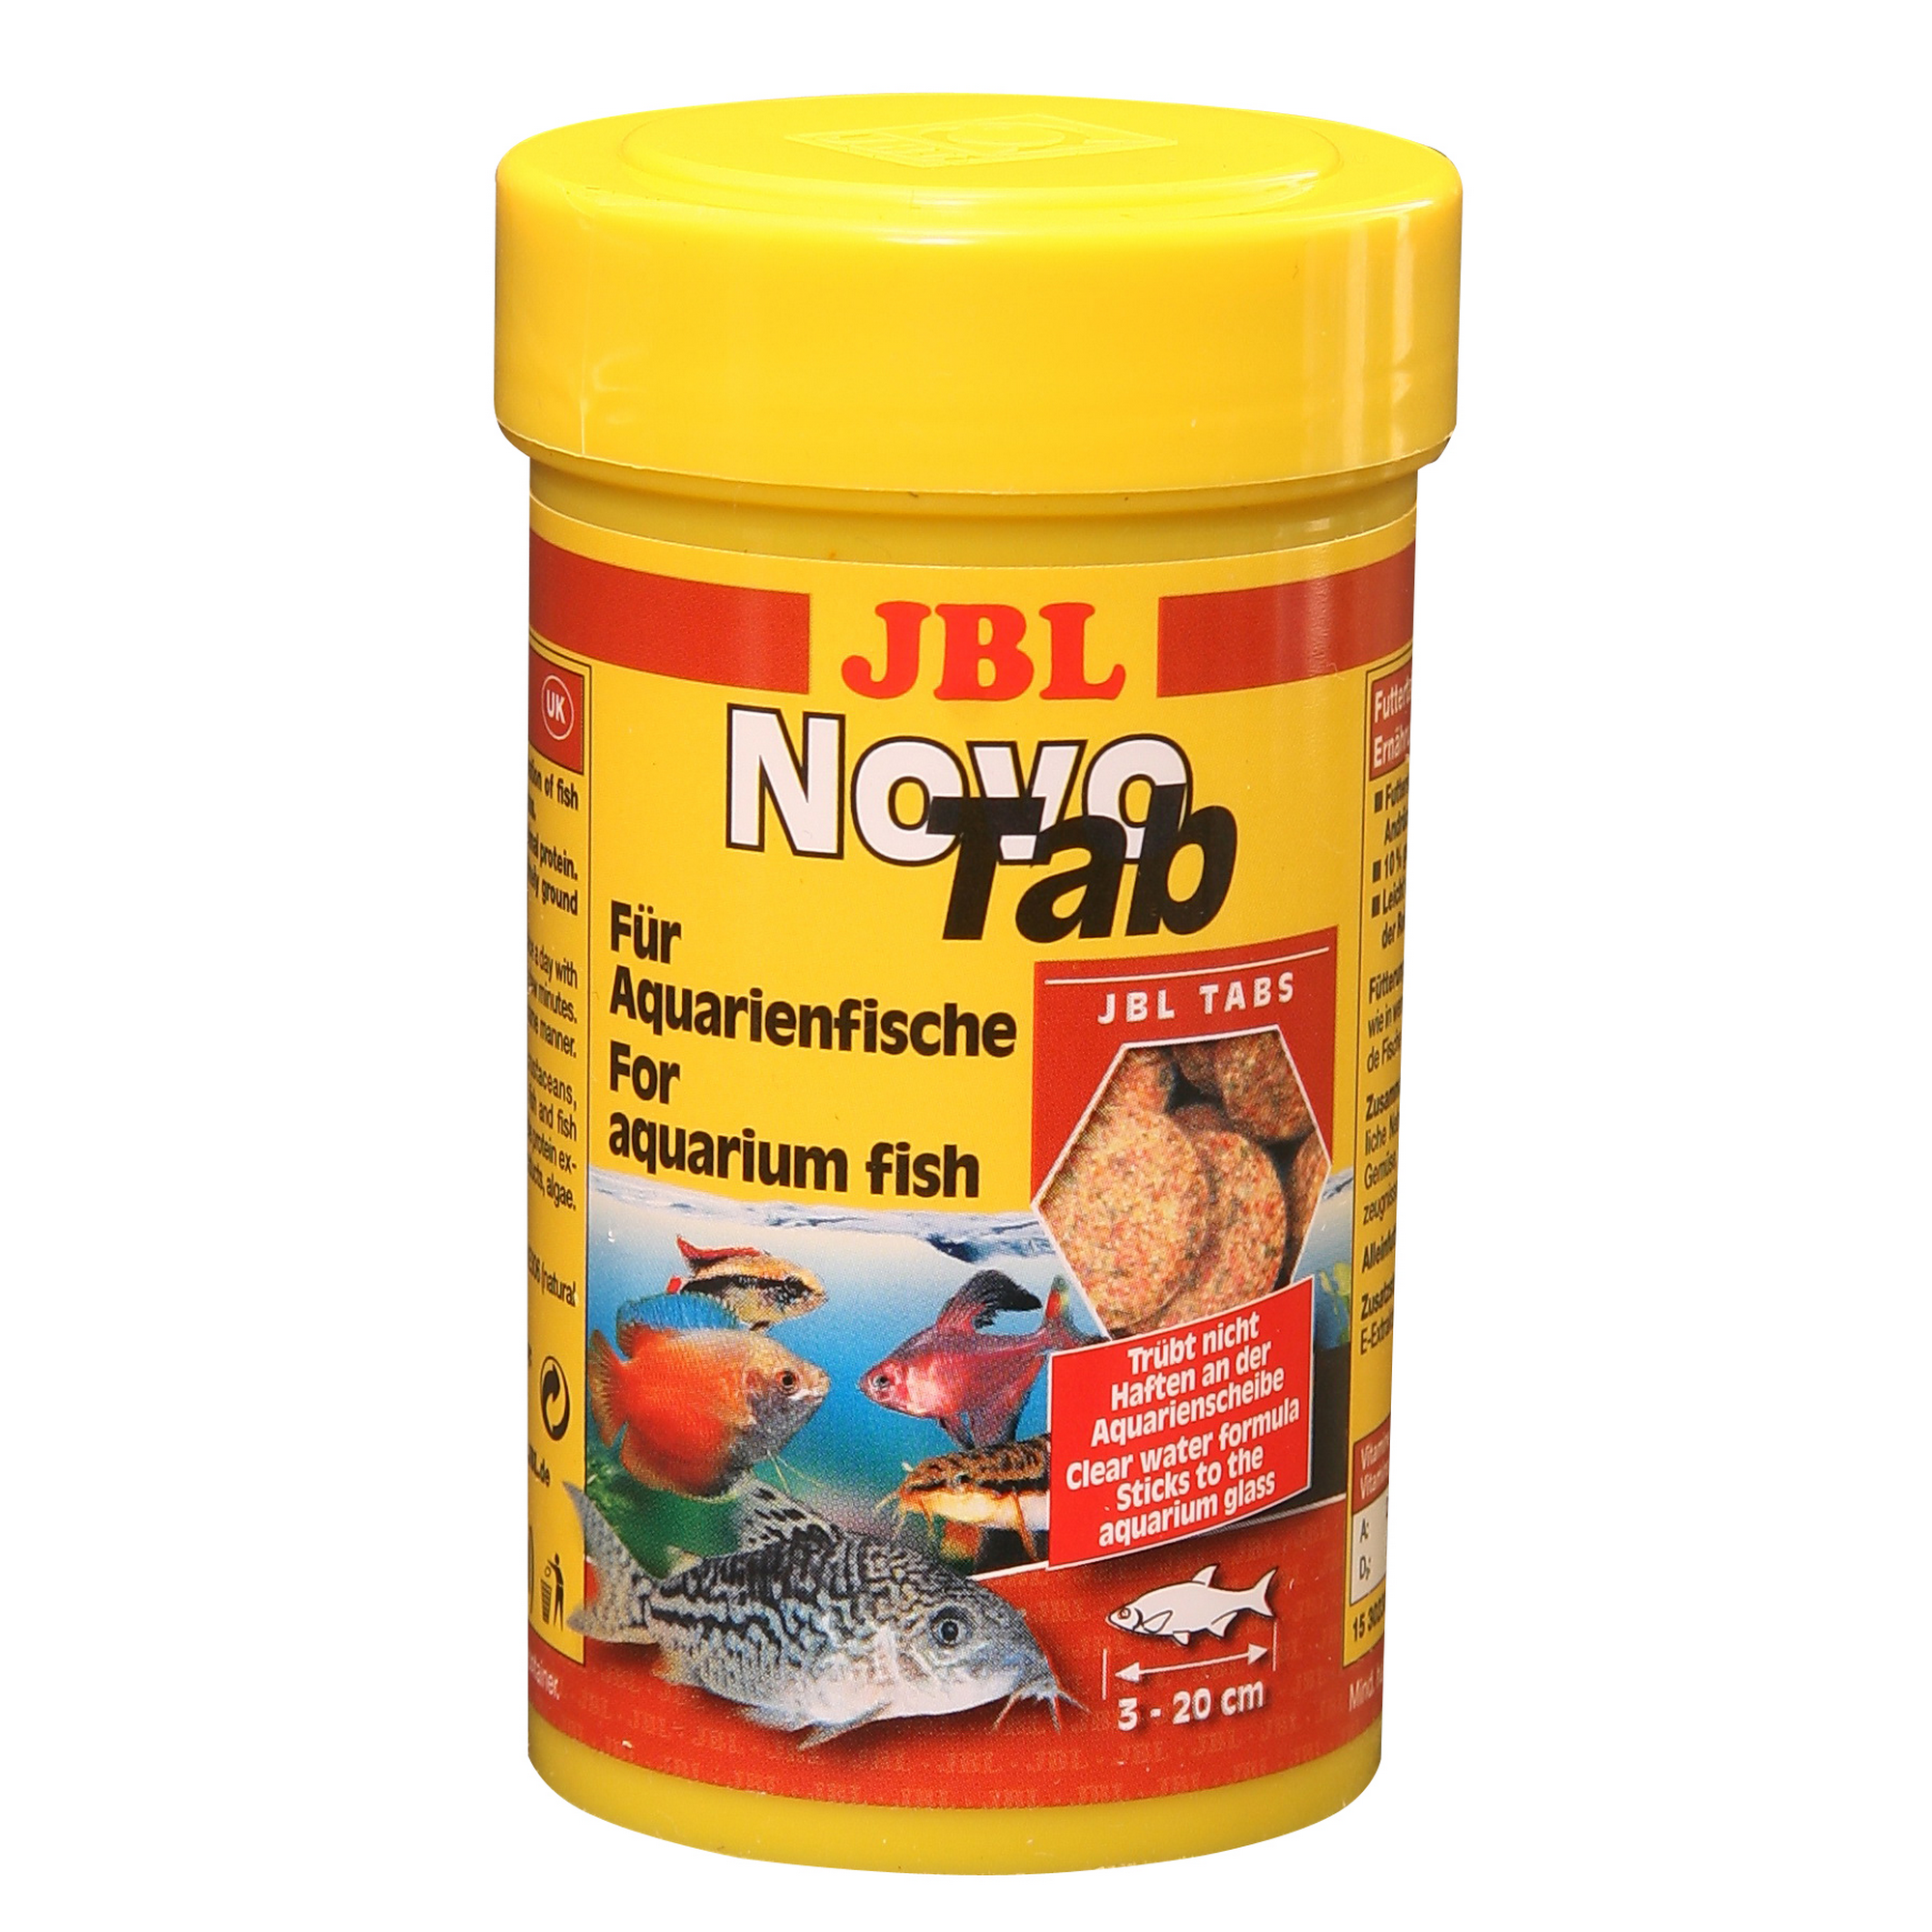 Novo Tab Für Aquarienfische 100 ml + product picture